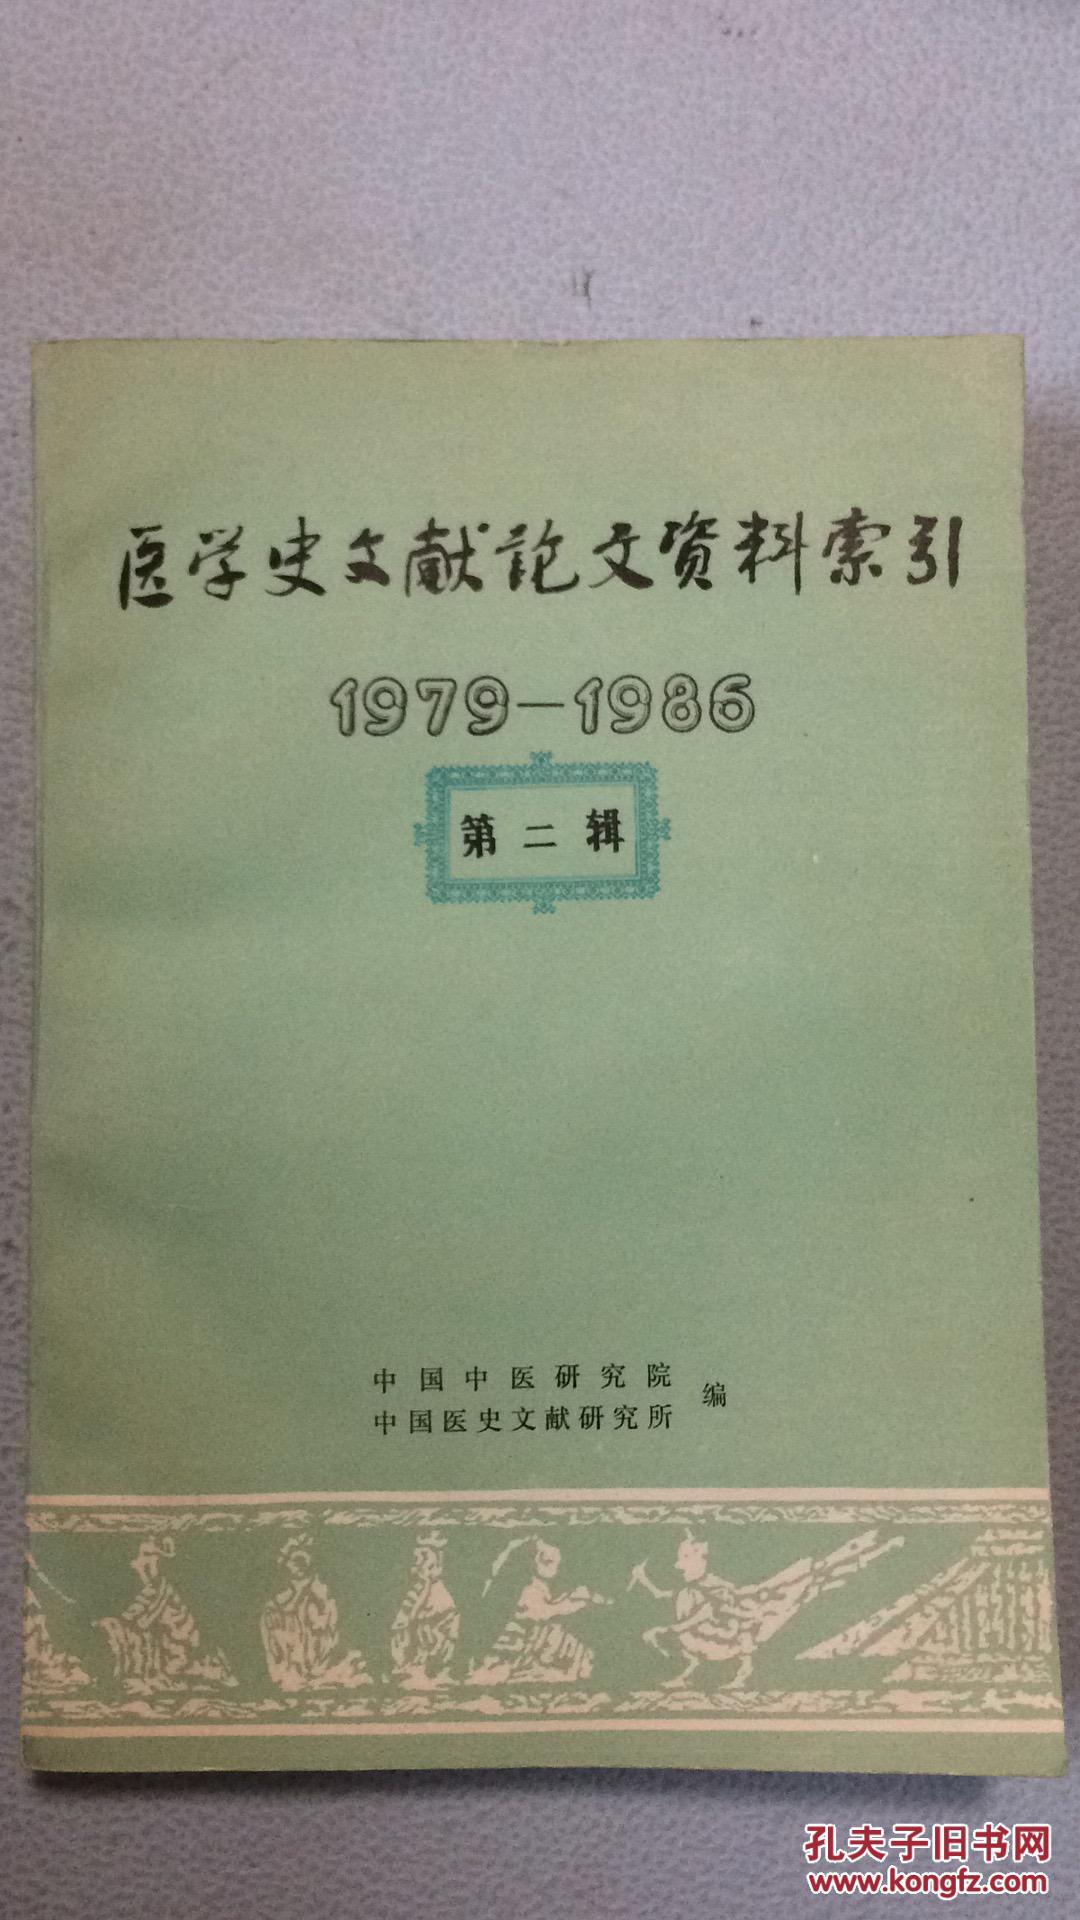 医学史文献论文资料索引1979-1986年(第二辑